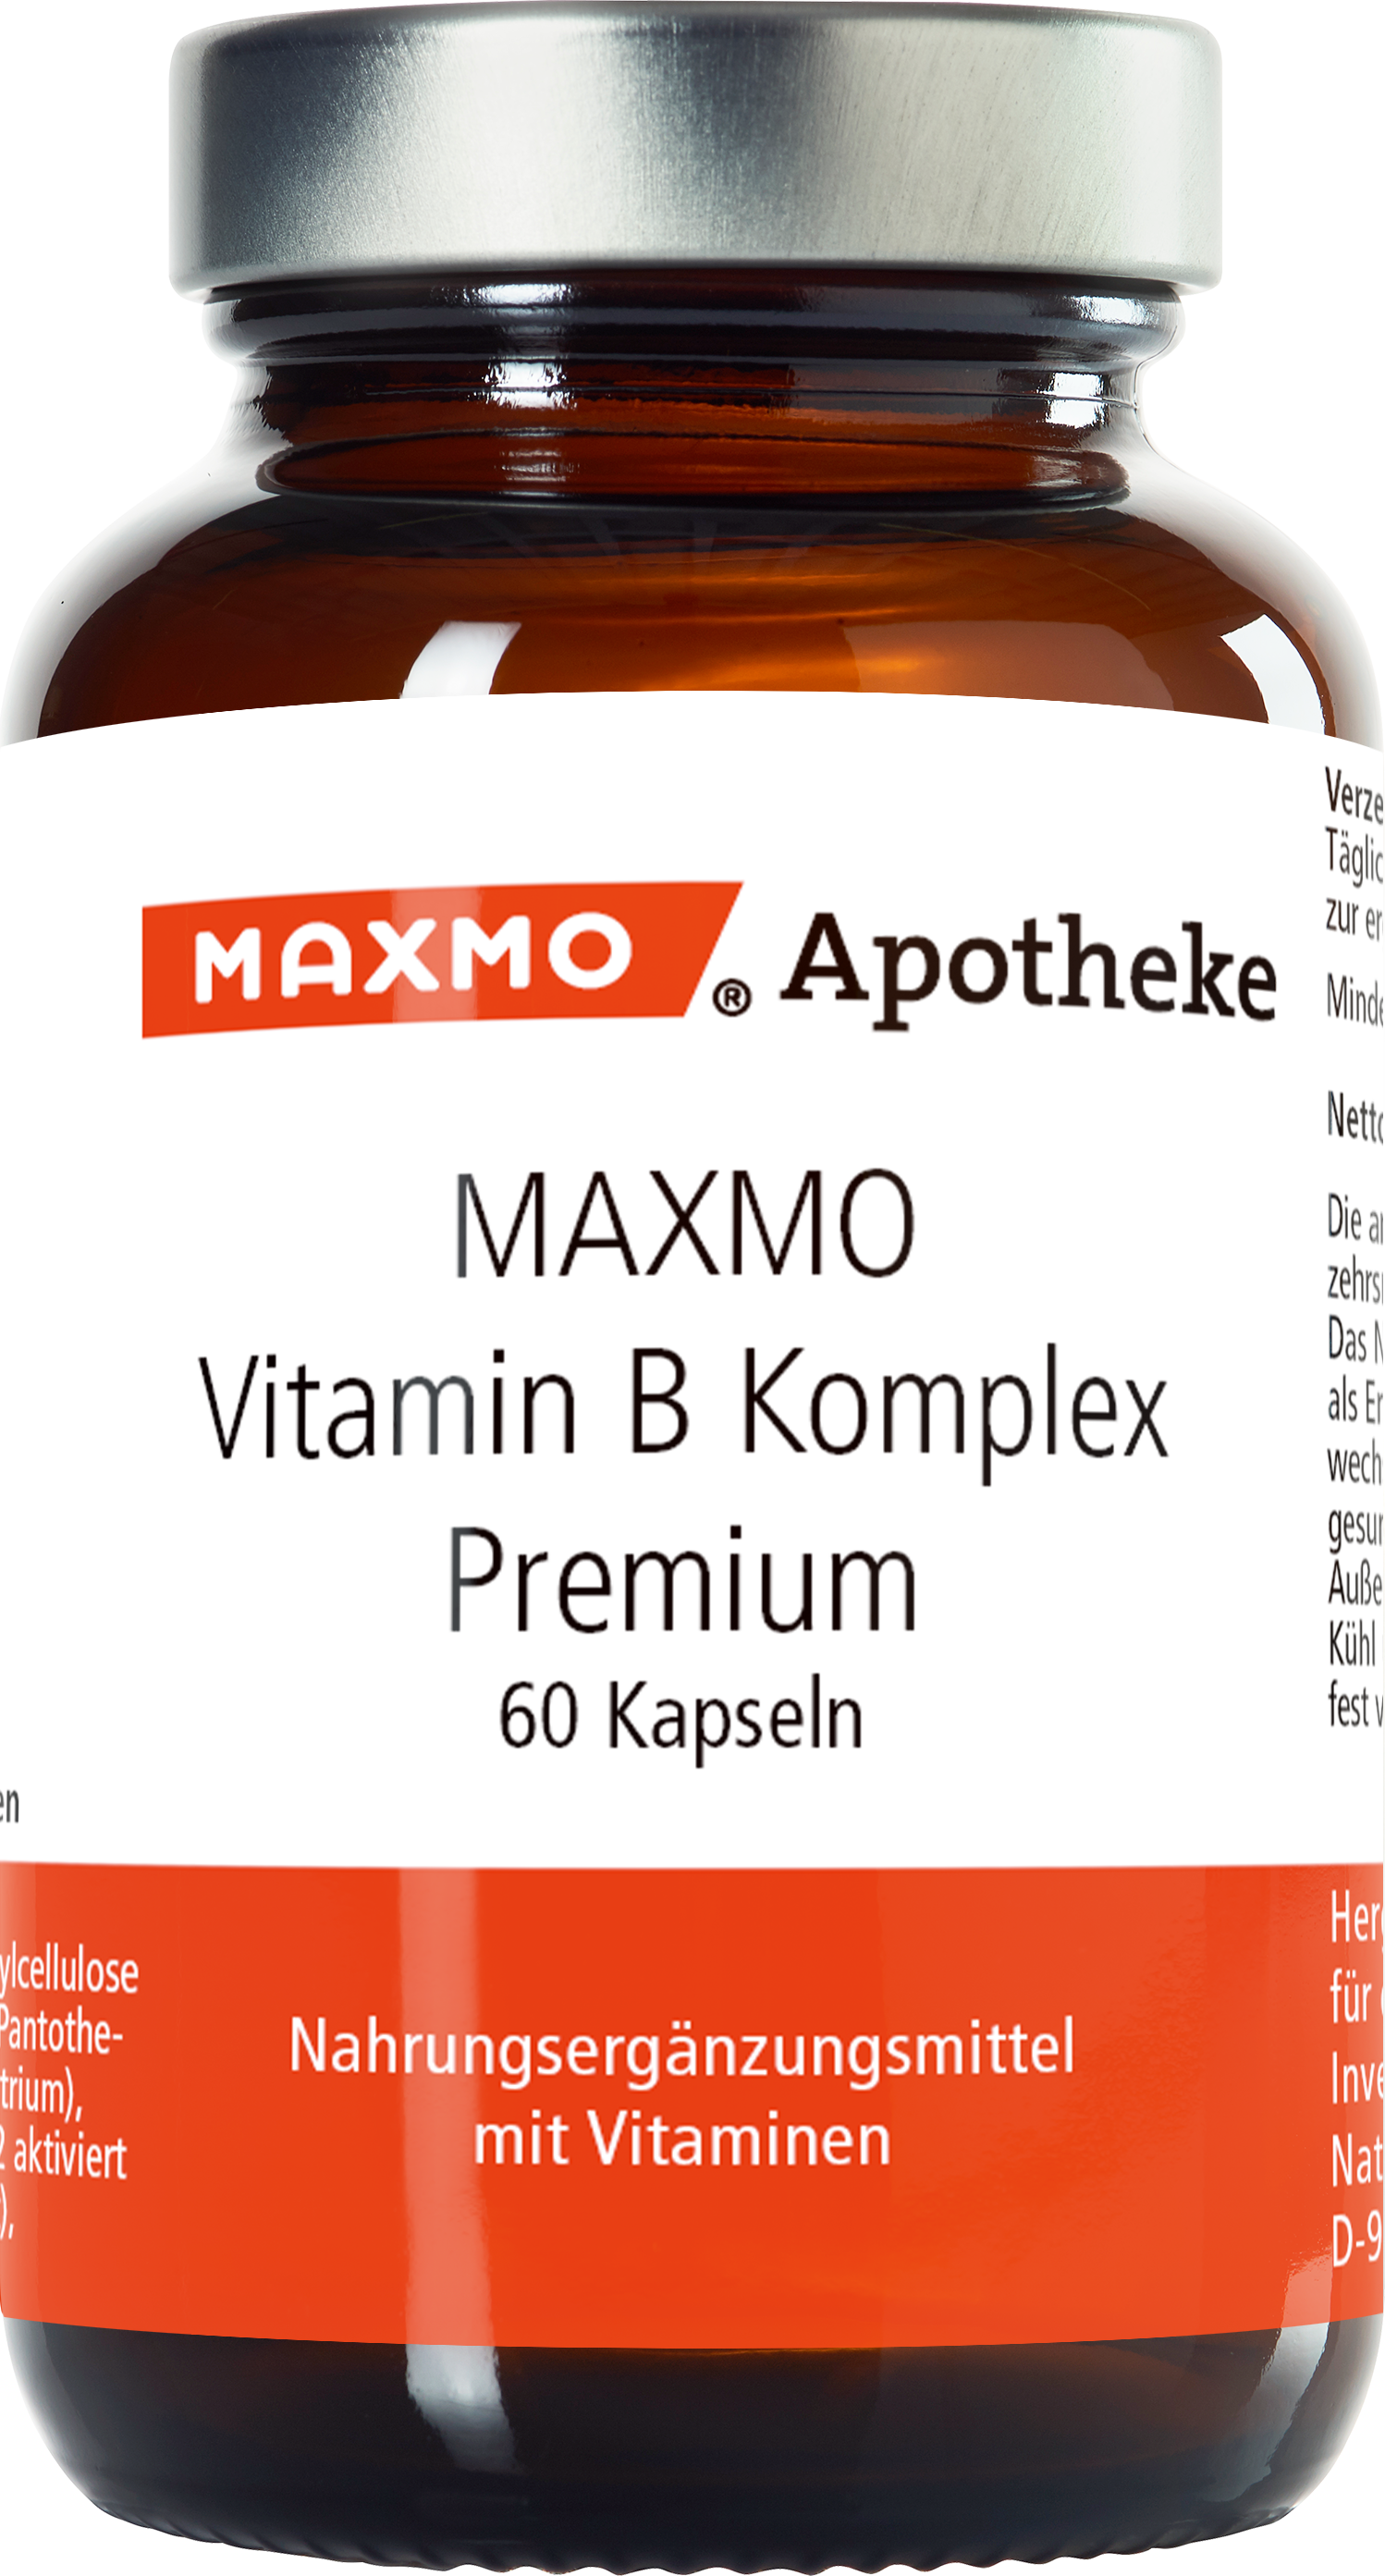 MAXMO Vitamin B Komplex Premium Kapseln